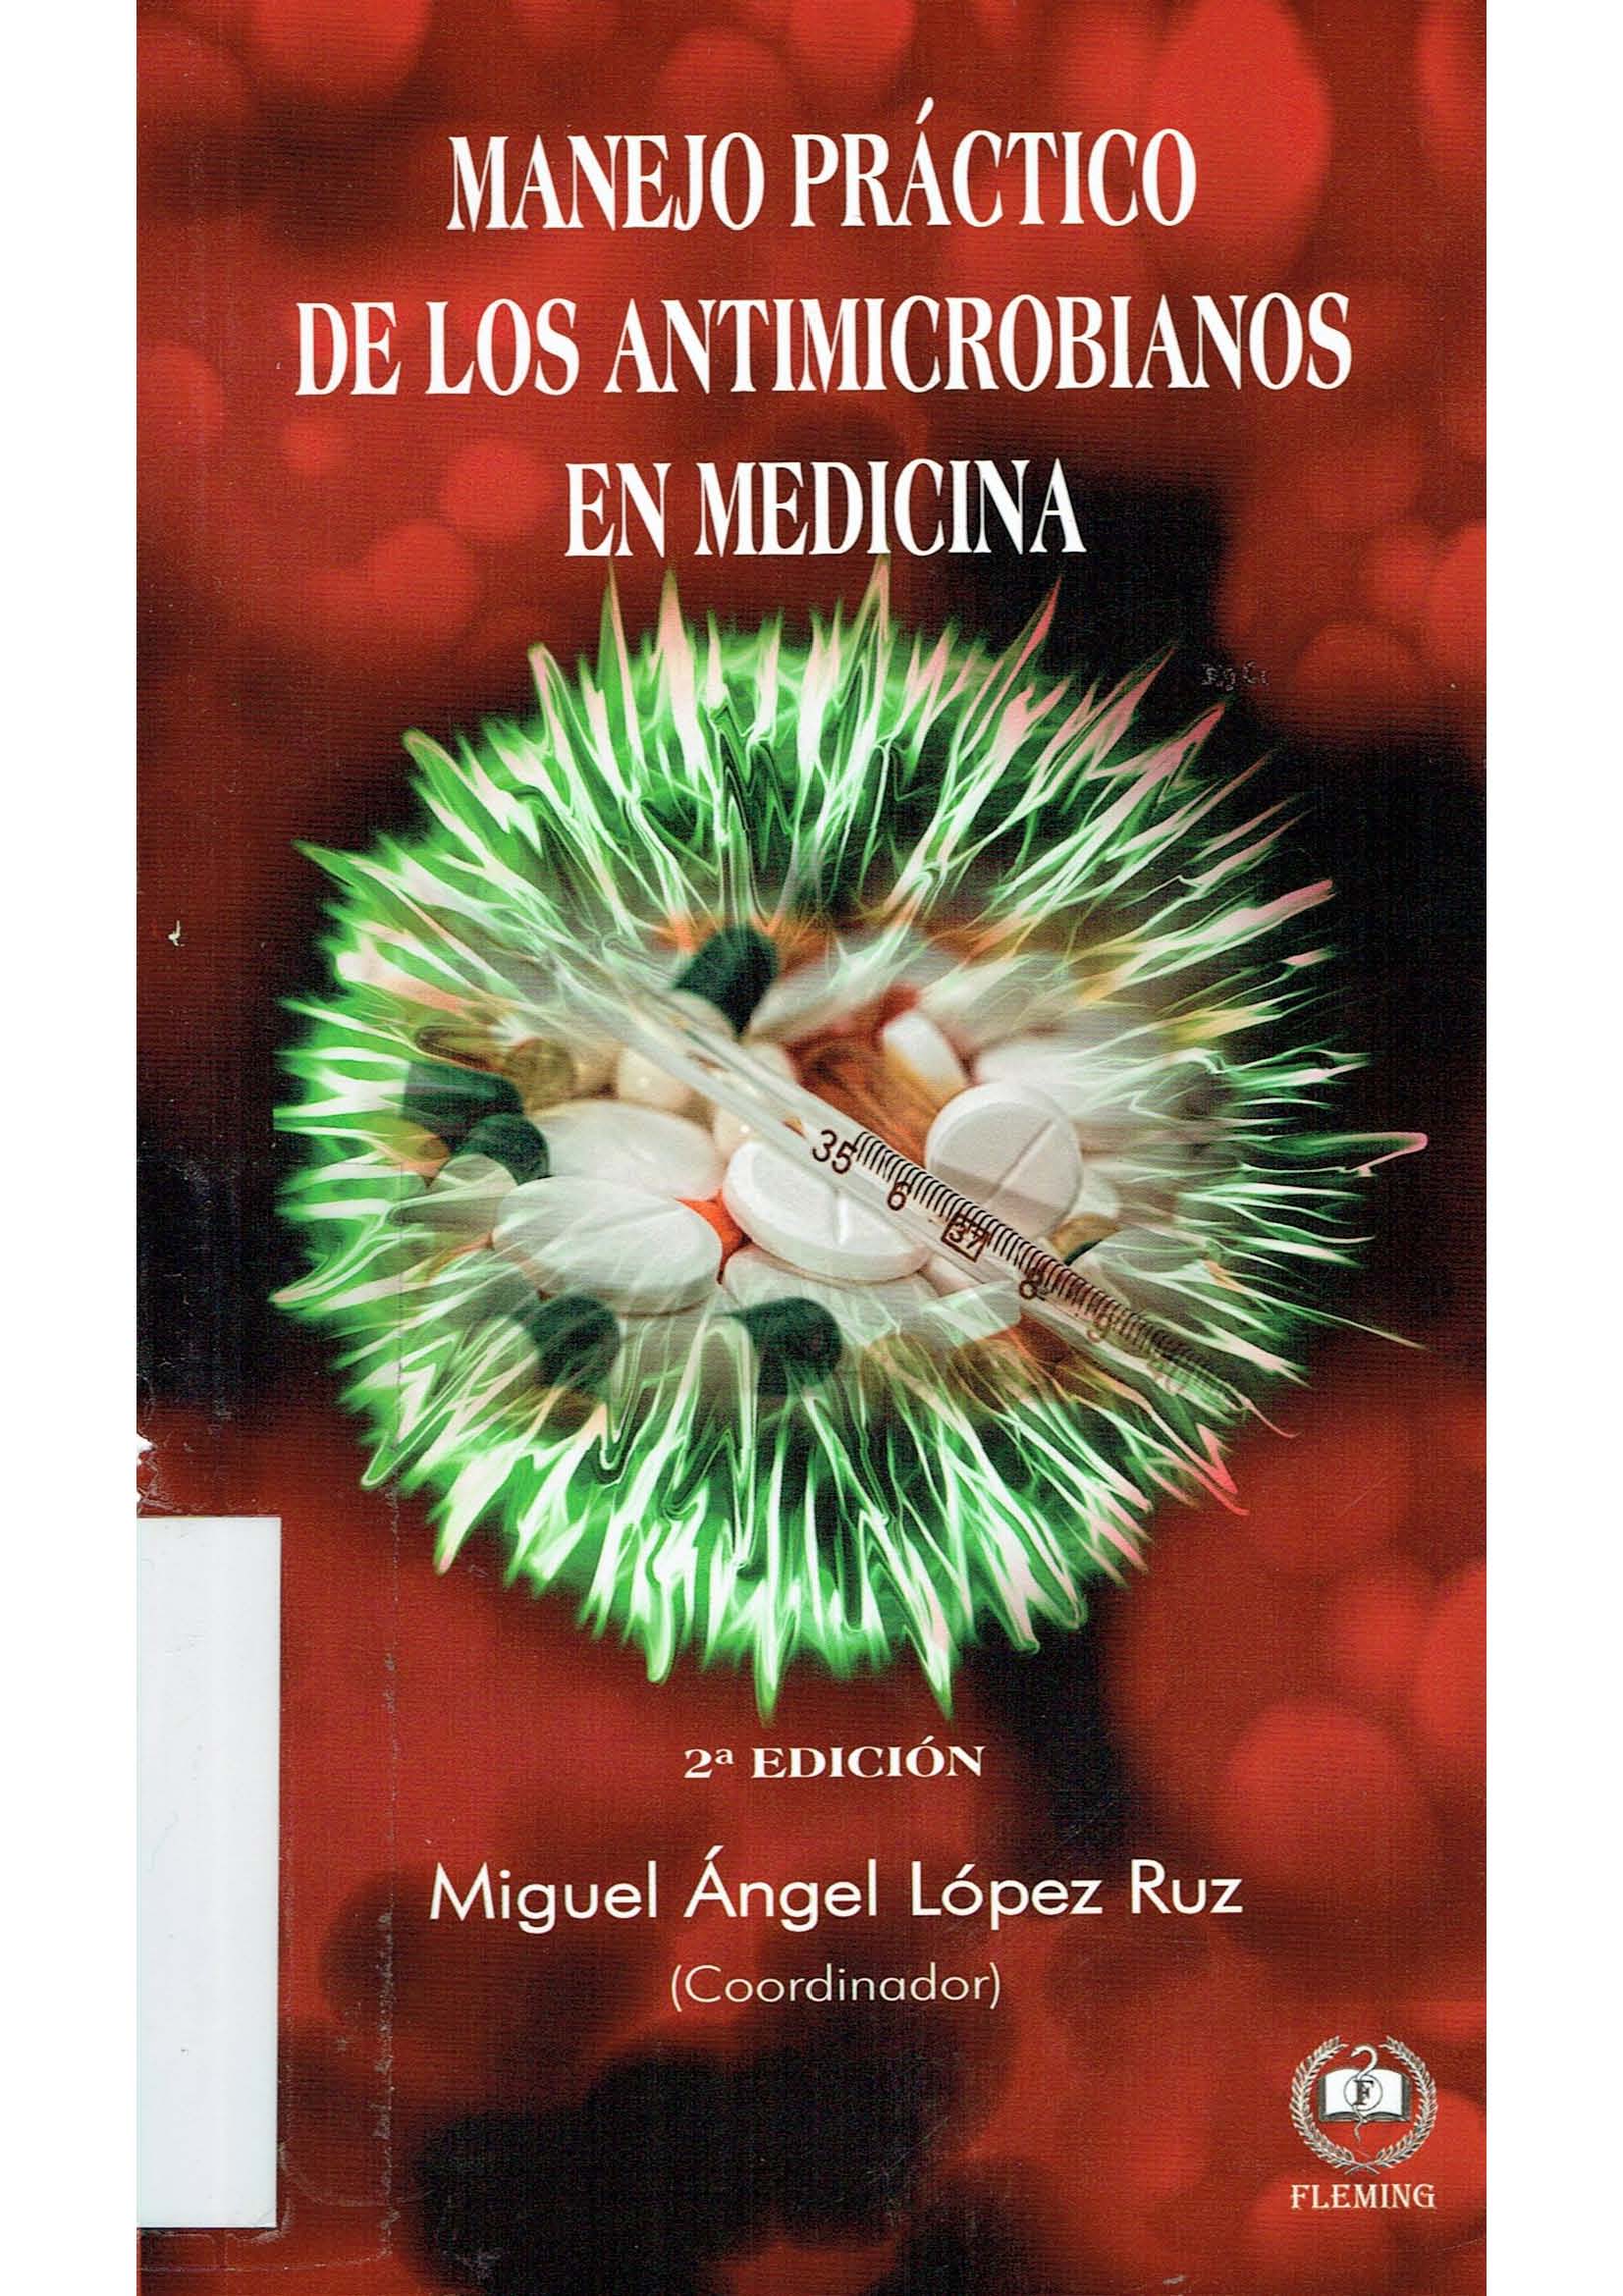 Imagen de portada del libro Manejo práctico de los antimicrobianos en medicina